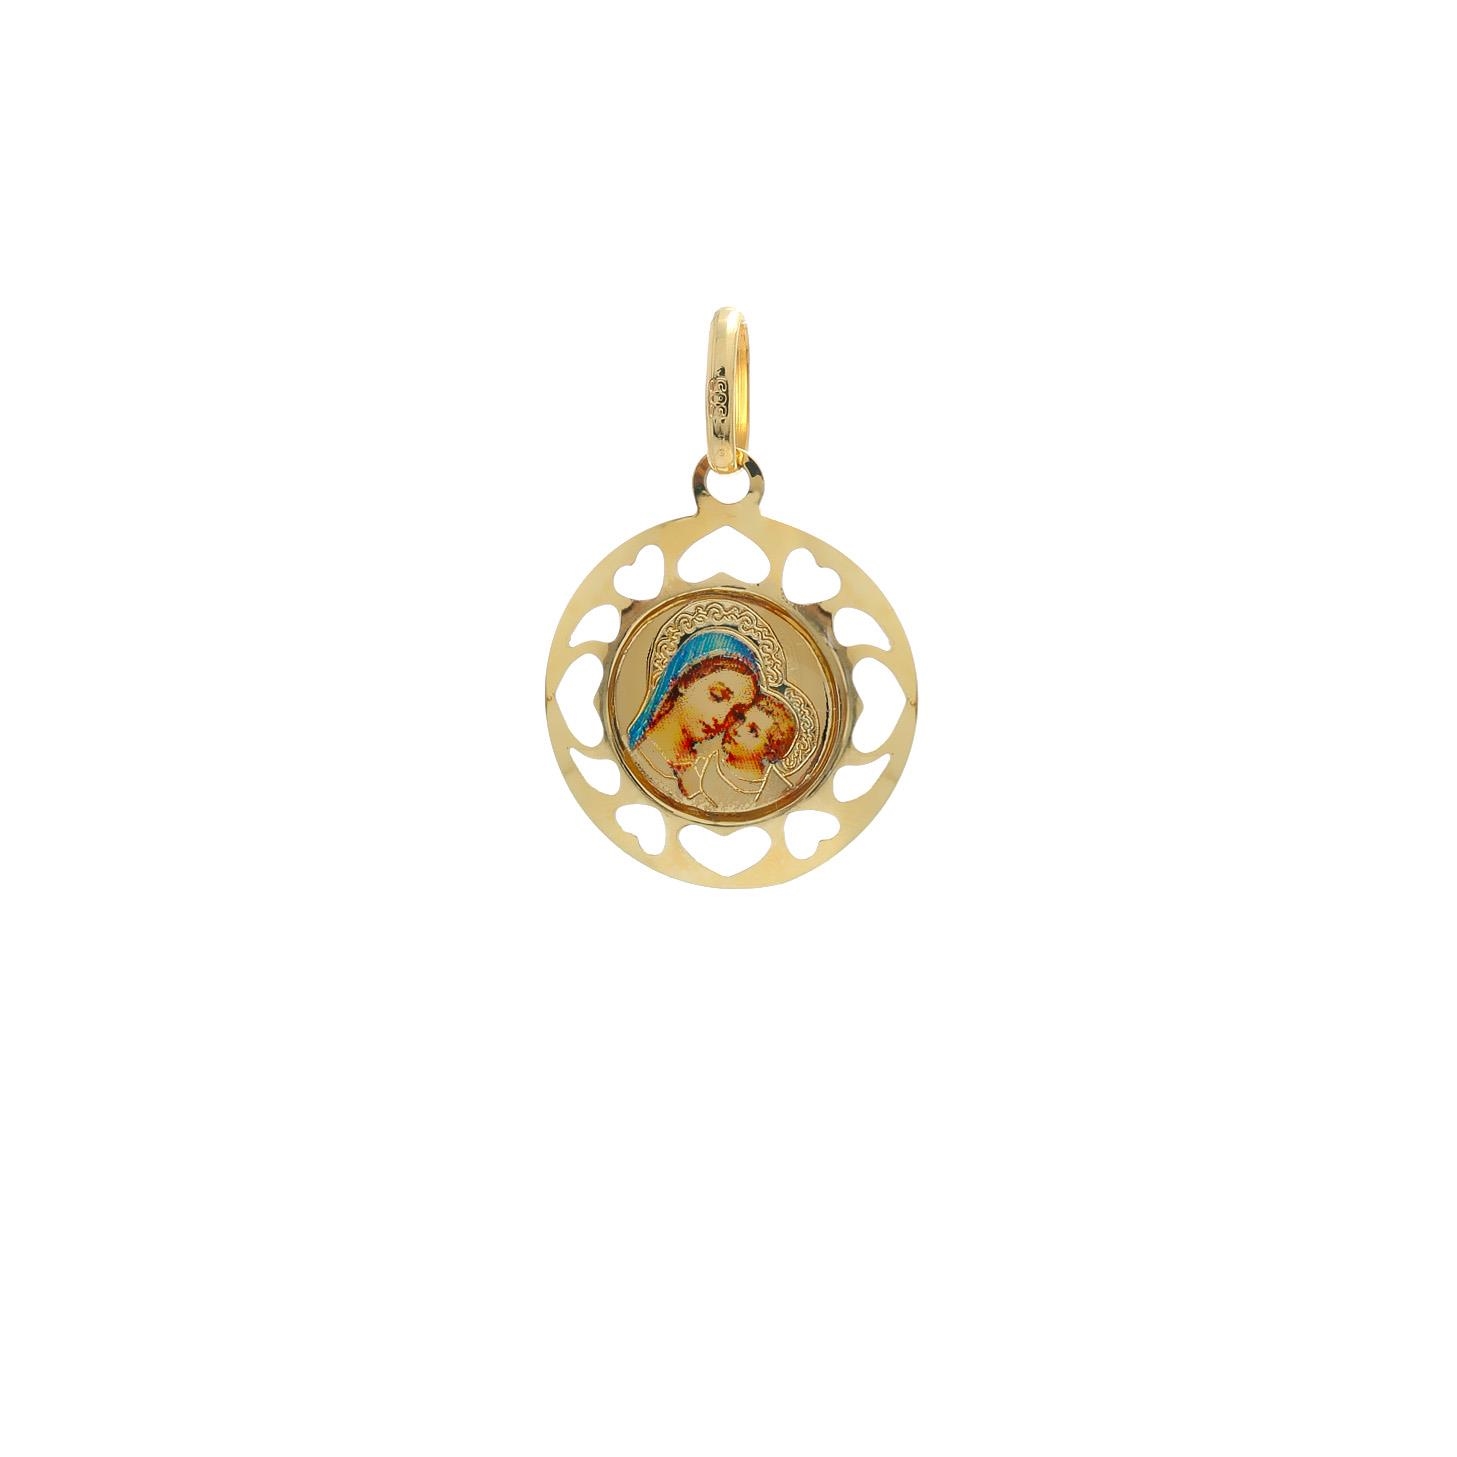 Zlatý okrúhly medailón Božej Matky s dieťaťom